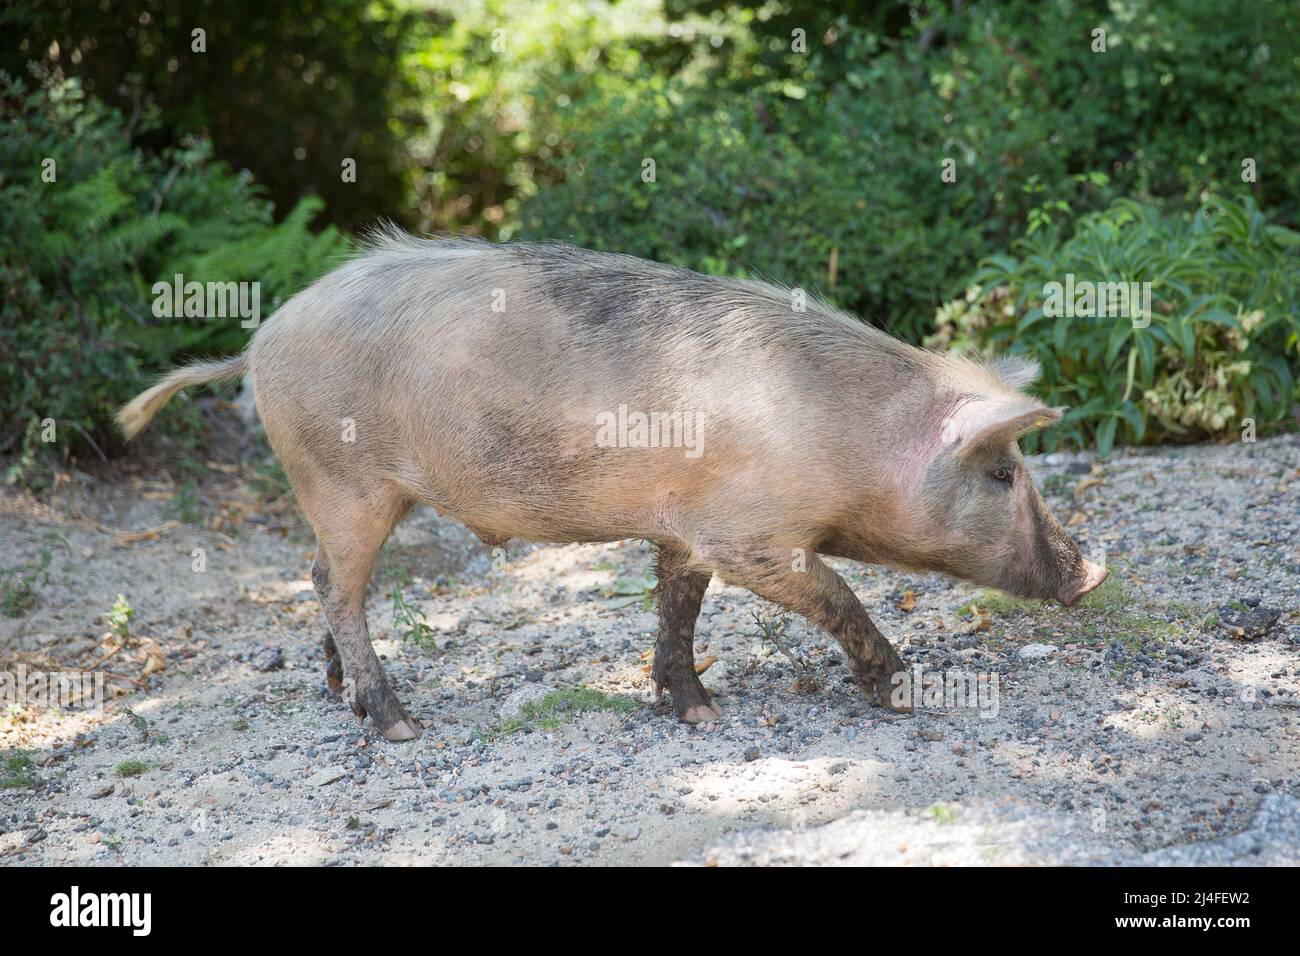 Los animales viven libremente en la isla de Córcega. El cerdo salvaje camina en la carretera en la isla de Córcega, Corse du Sud, Francia Foto de stock